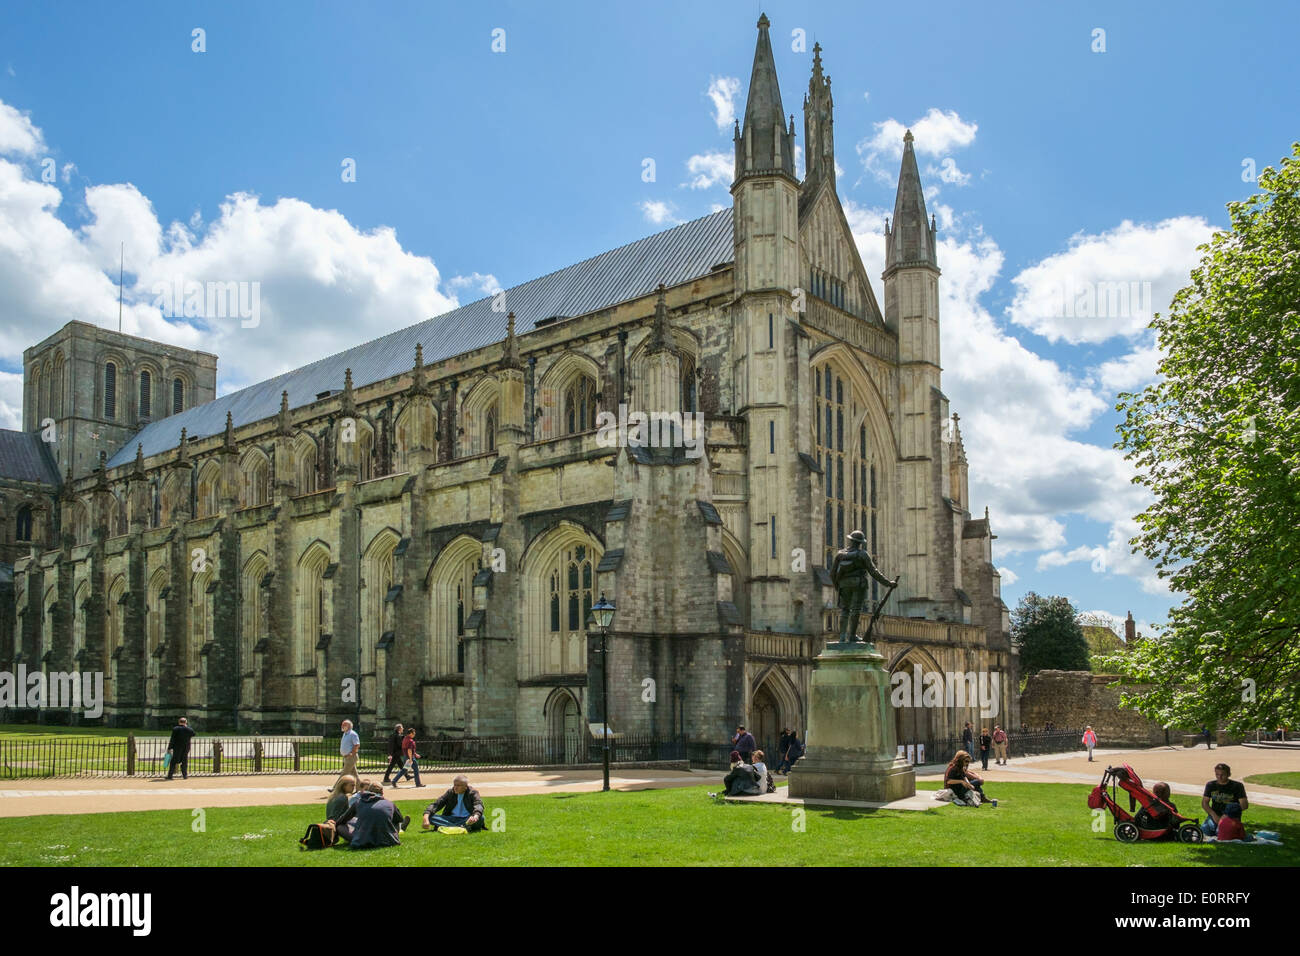 La Catedral de Winchester, Hampshire, Inglaterra, Reino Unido. Foto de stock